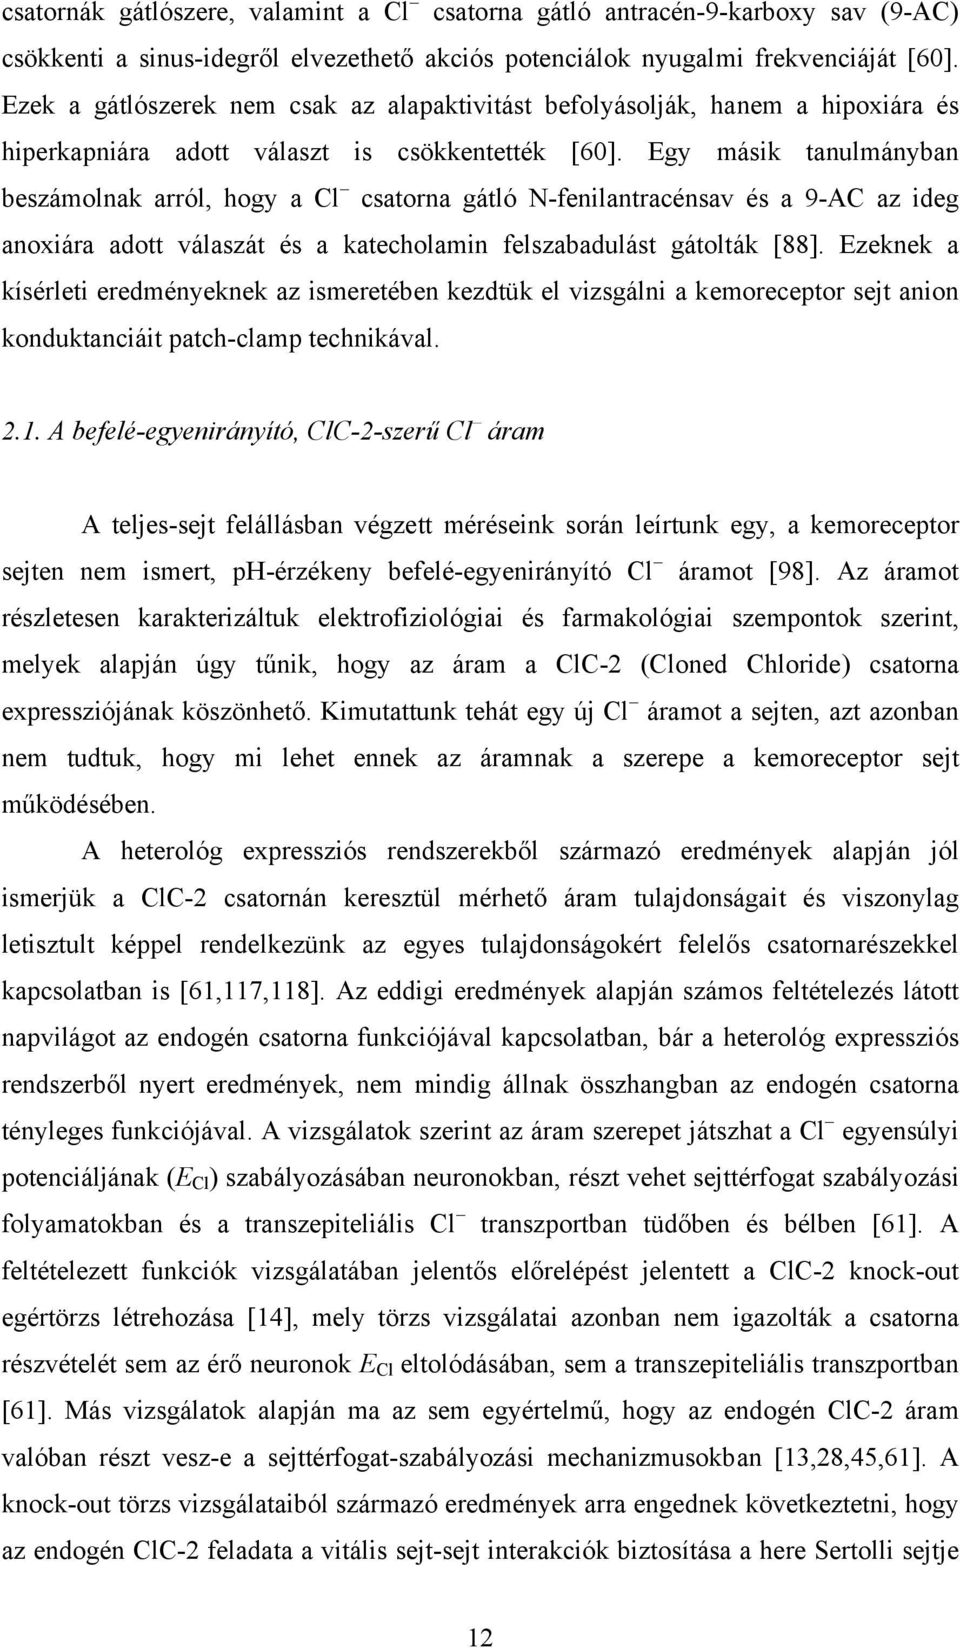 Egy másik tanulmányban beszámolnak arról, hogy a Cl csatorna gátló N-fenilantracénsav és a 9-AC az ideg anoxiára adott válaszát és a katecholamin felszabadulást gátolták [88].